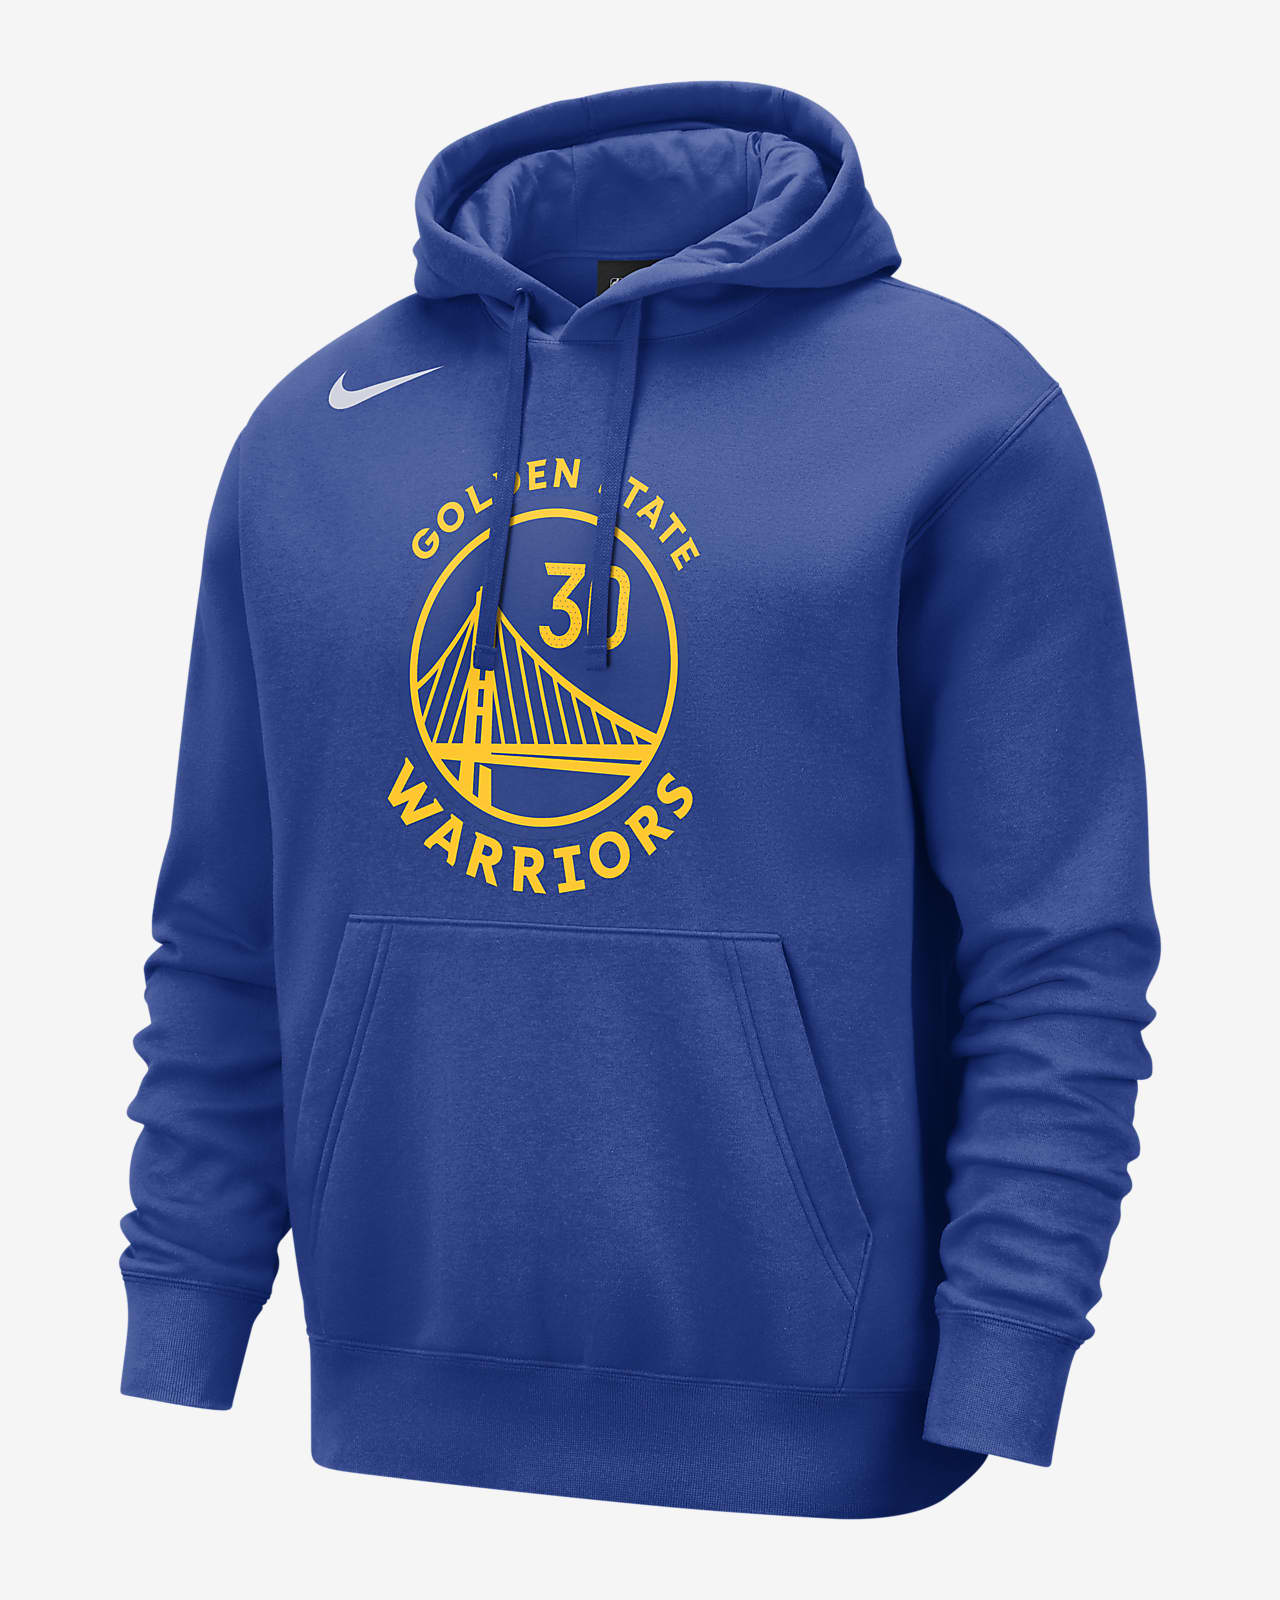 golden state warriors zip up hoodie